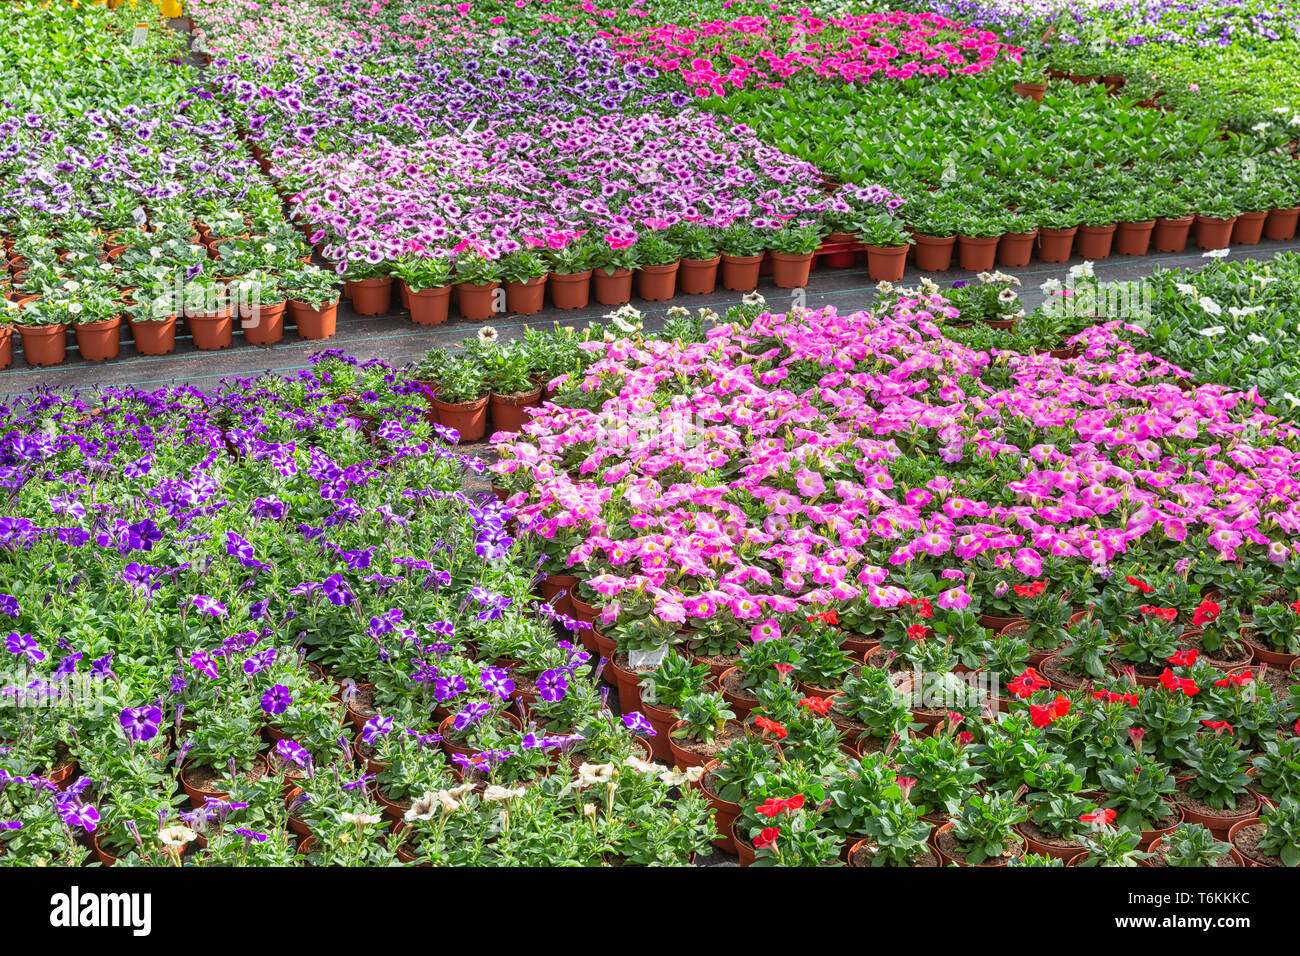 Invernaderos holandeses con cultivo de begonia coloridos y flores violetas  Fotografía de stock - Alamy